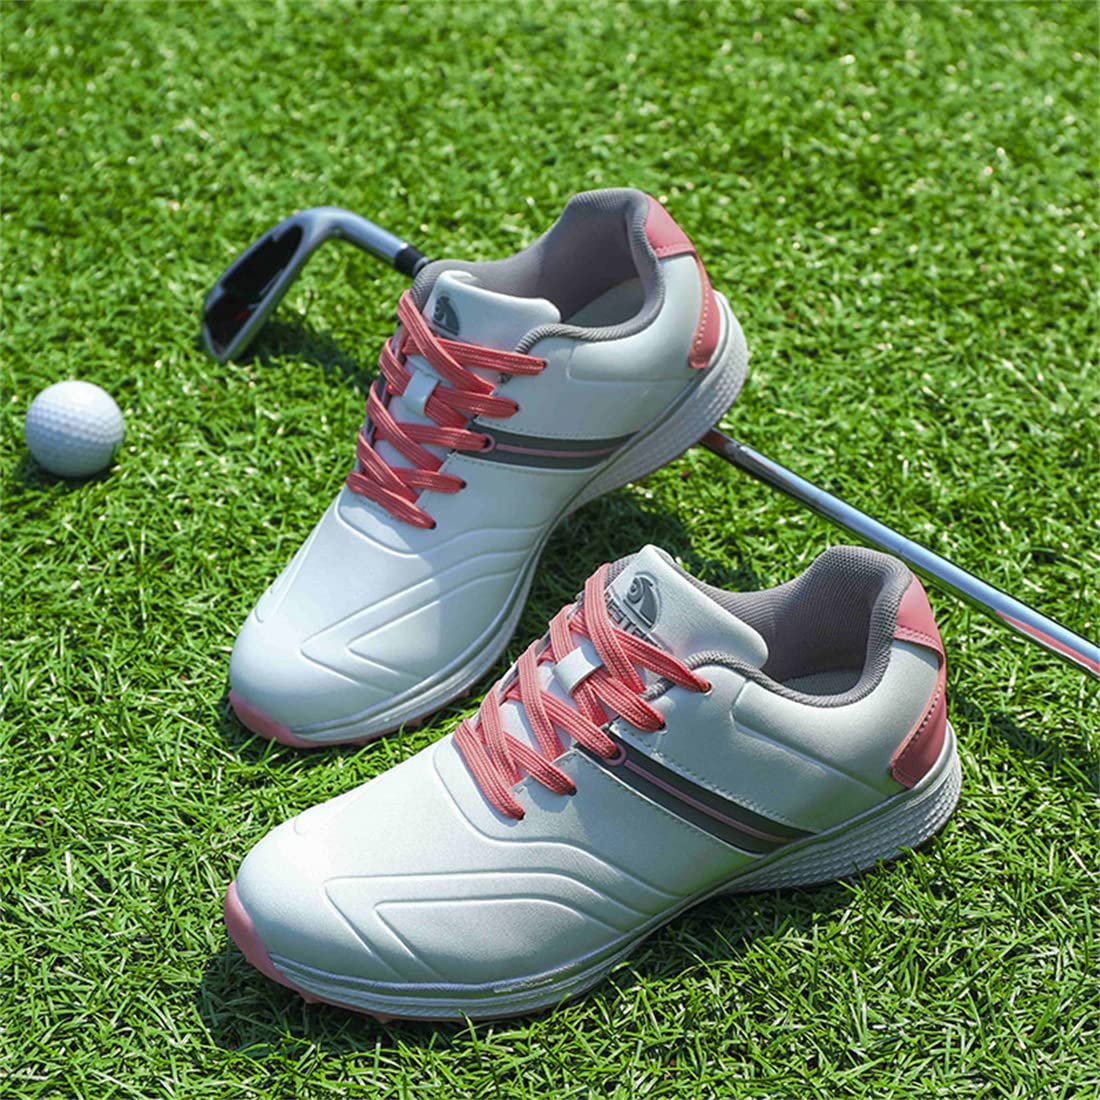 VEACAM Spikeless Golf Shoes Casual Waterproof Golf Sneakers Comfort Anti Slip Golf Footwear Outdoor Ladies Golf Footwears,Pink,7